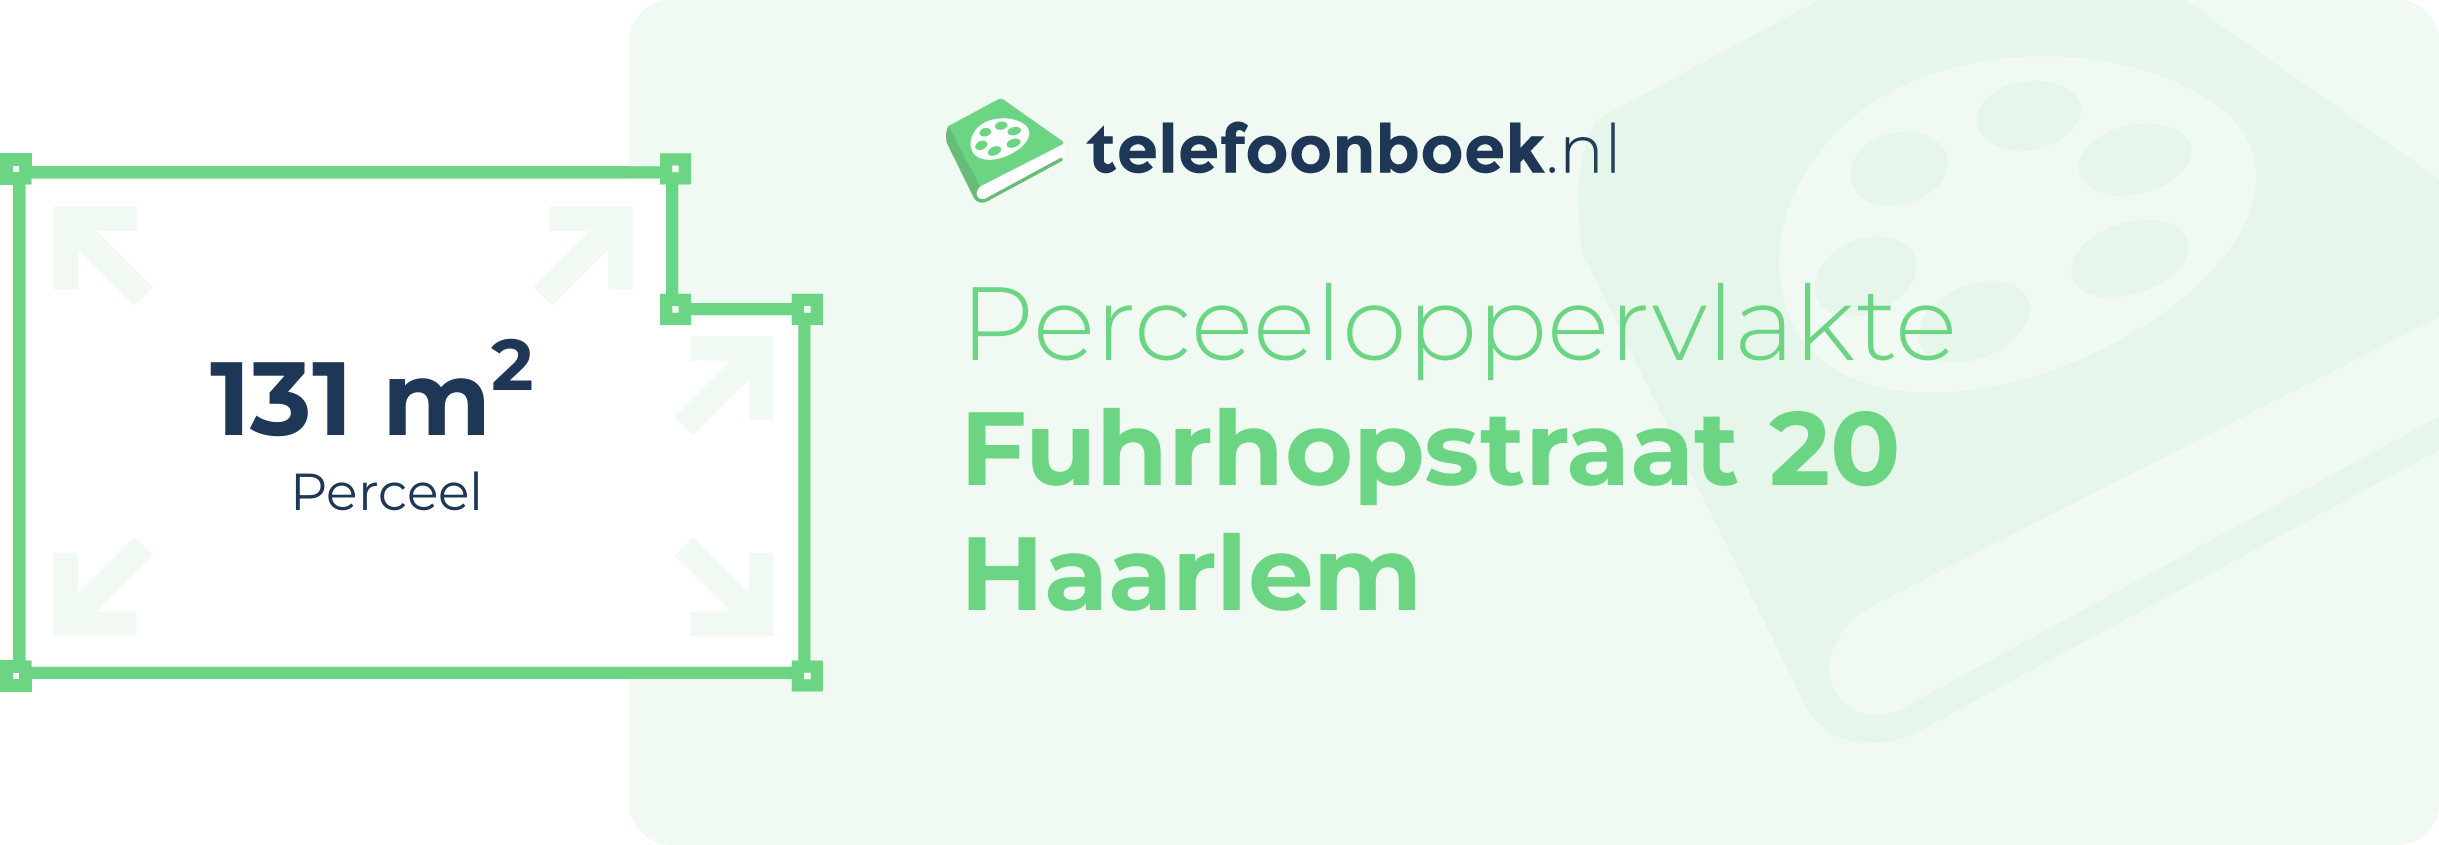 Perceeloppervlakte Fuhrhopstraat 20 Haarlem